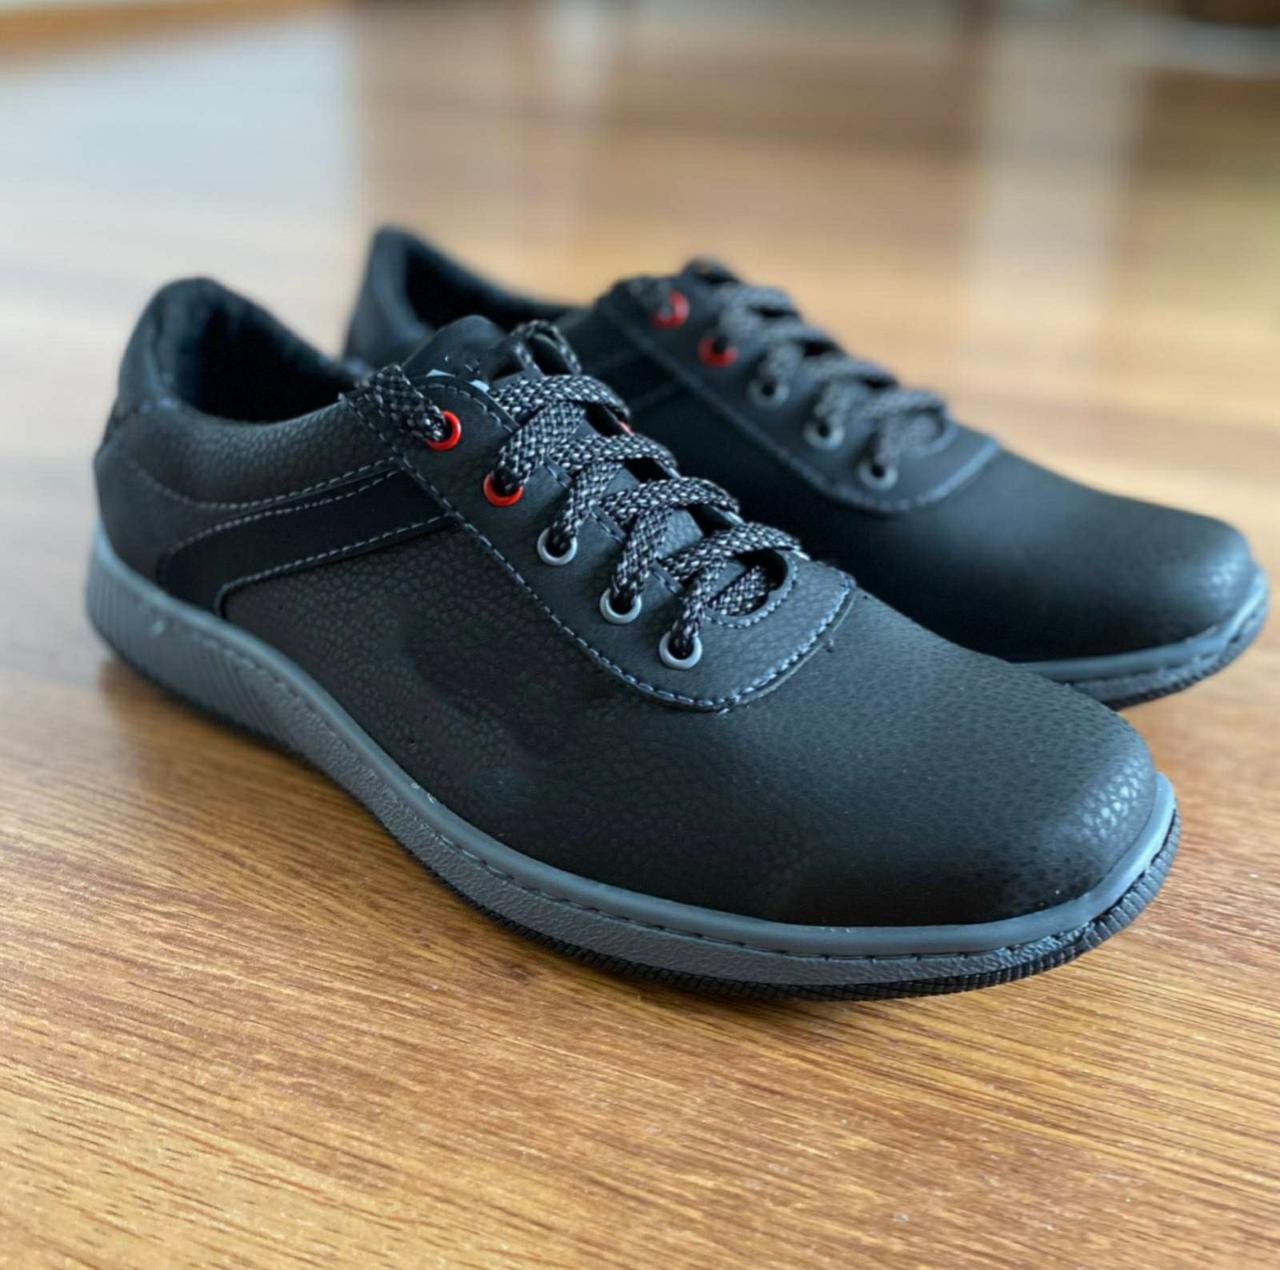 Чоловічі туфлі чорні спортивні прошиті сіра підошва (код 5323)